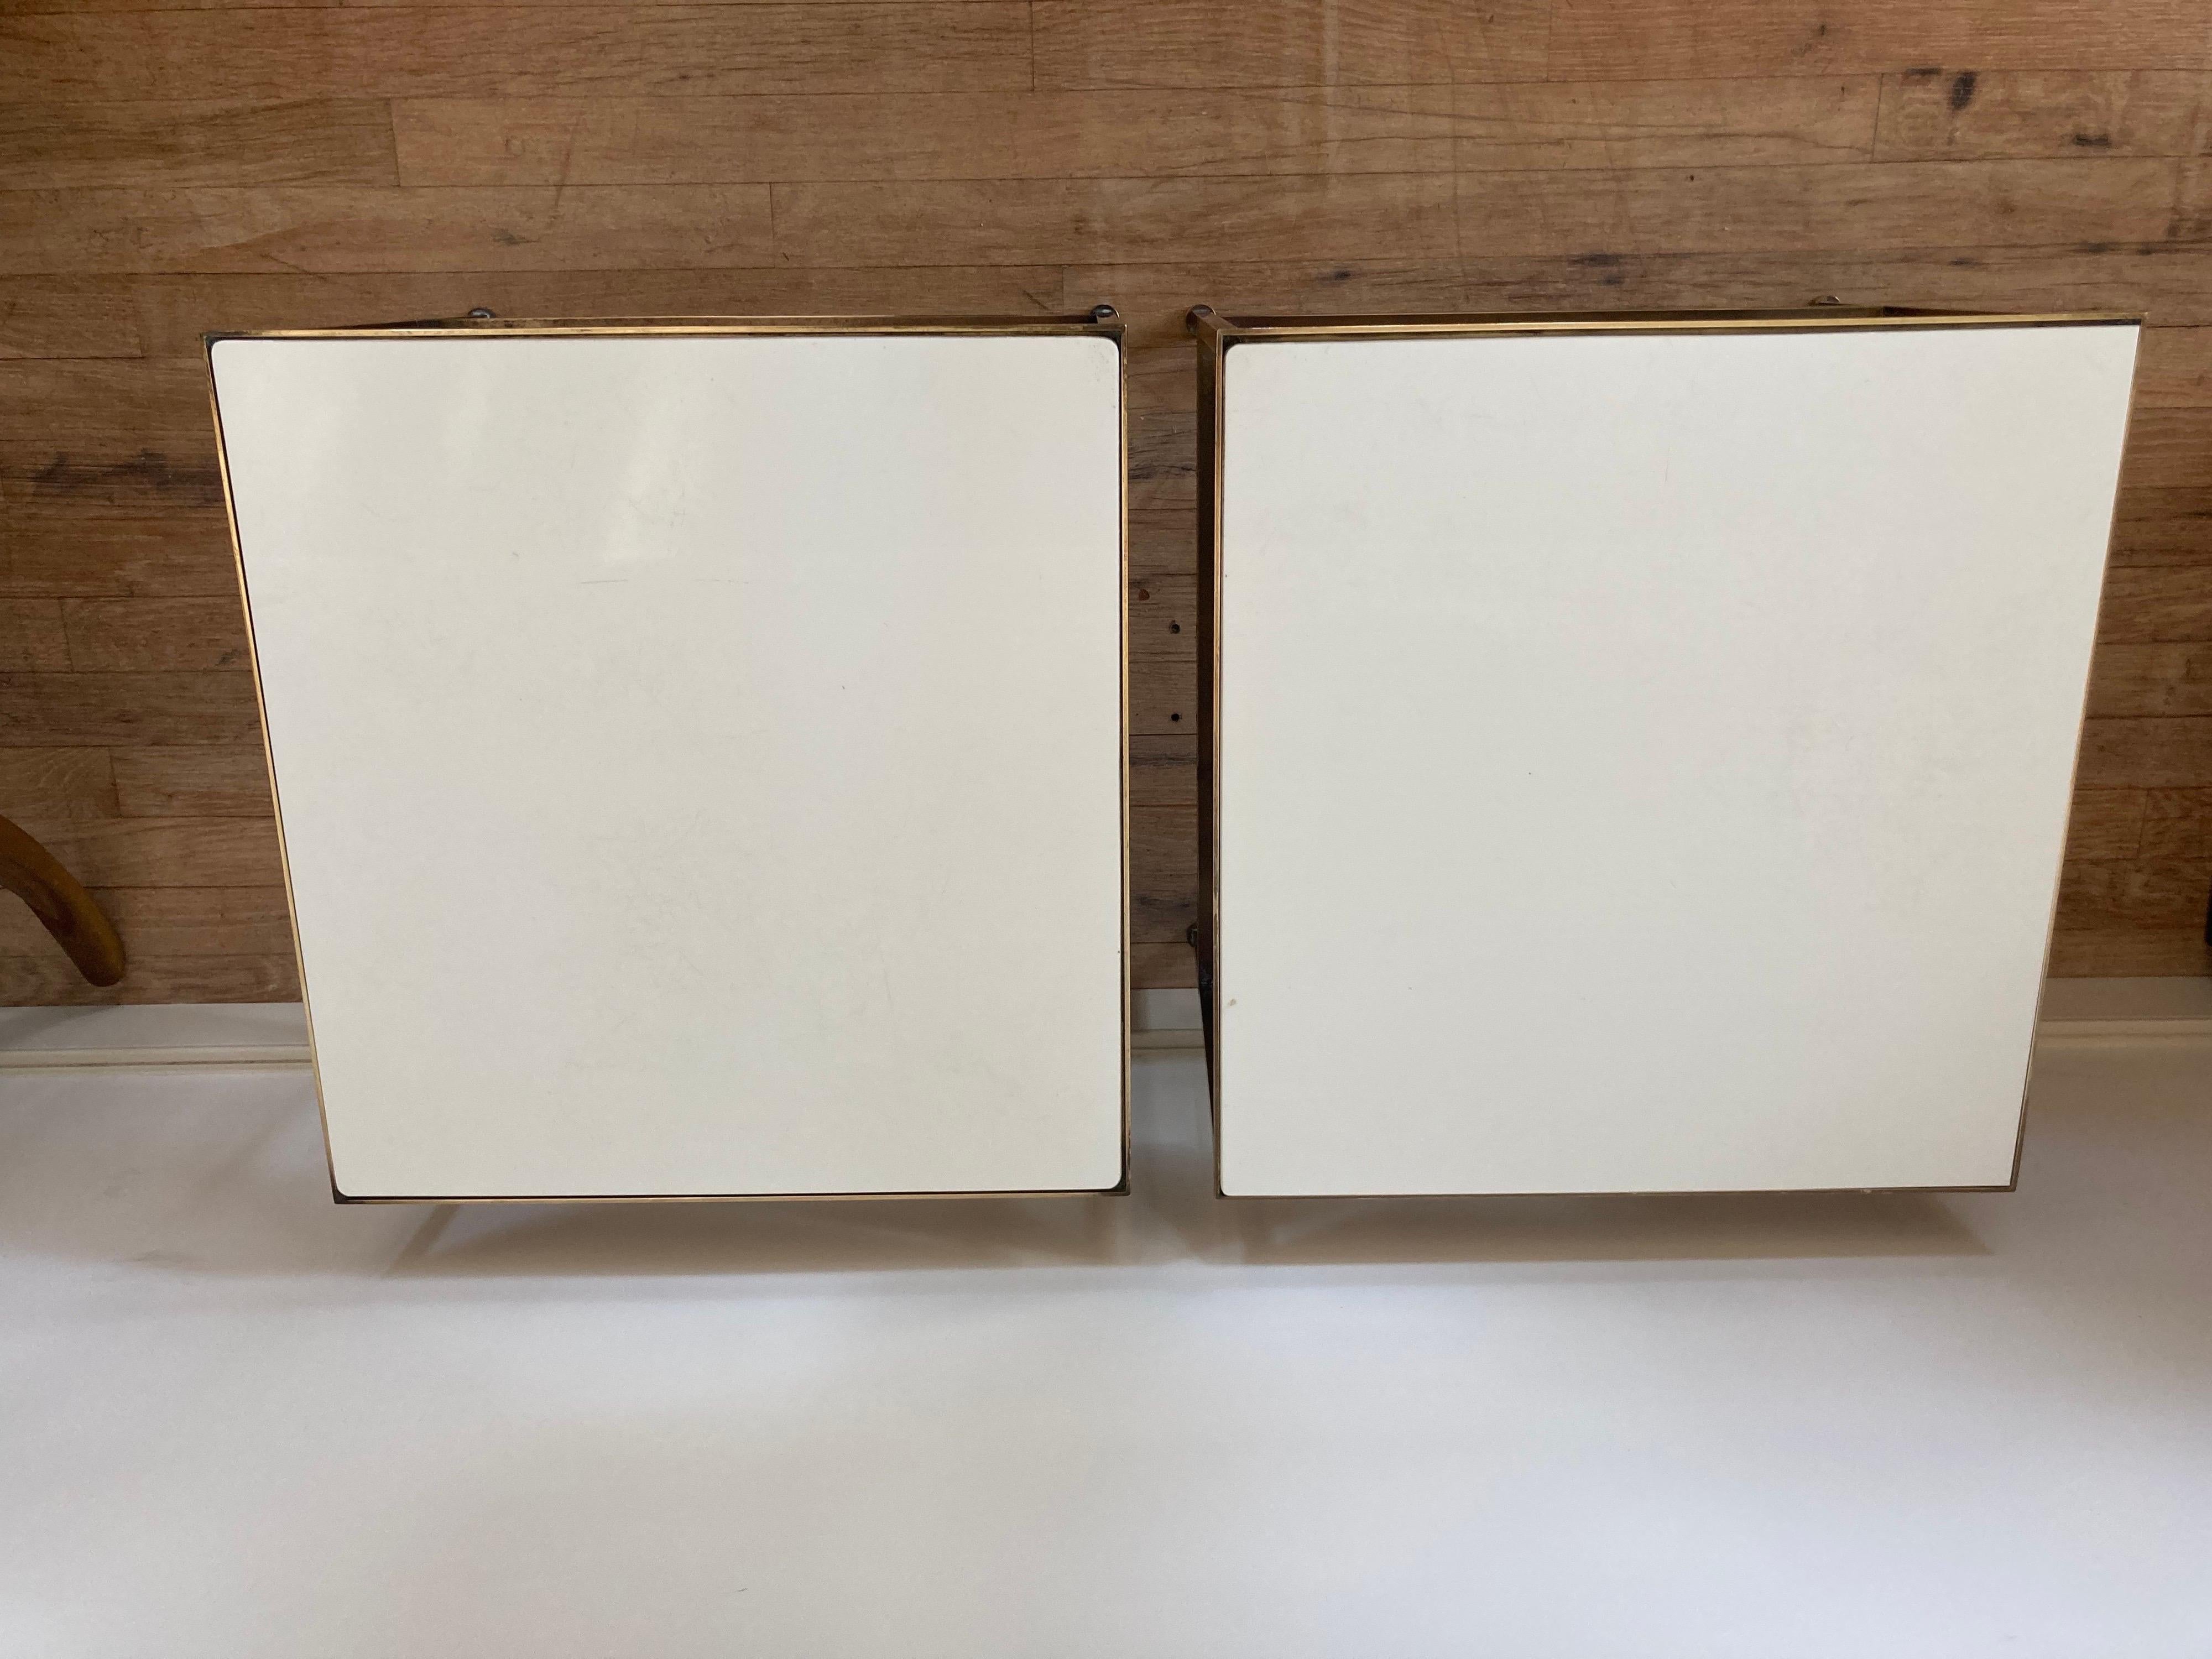 Pair of brass framed white glass or vitrolite top tables design by Paul McCobb for Calvin.